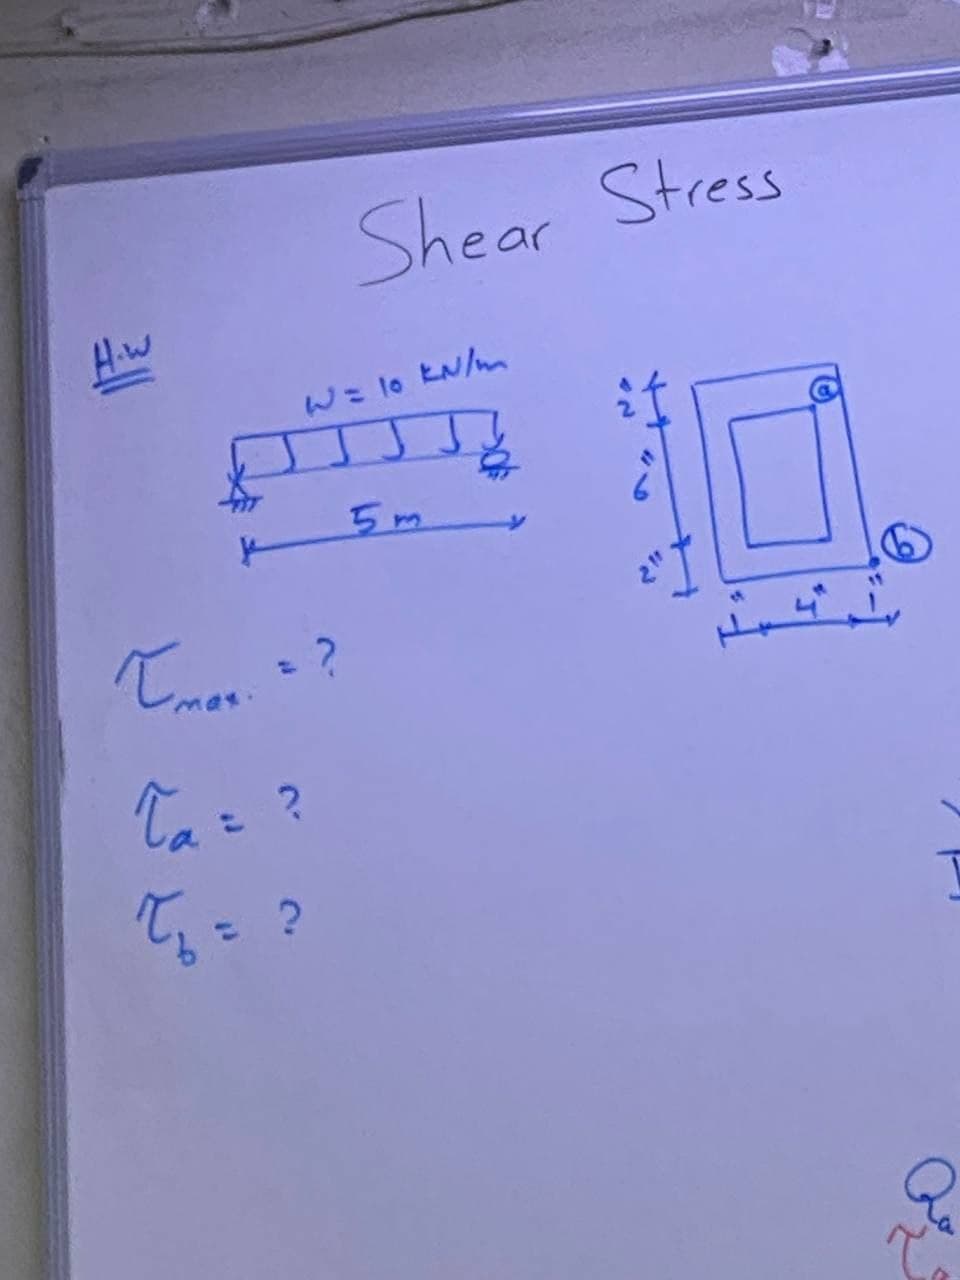 Shear Stress
Hiw
W= 1o EN/m
5m
Ta= ?
